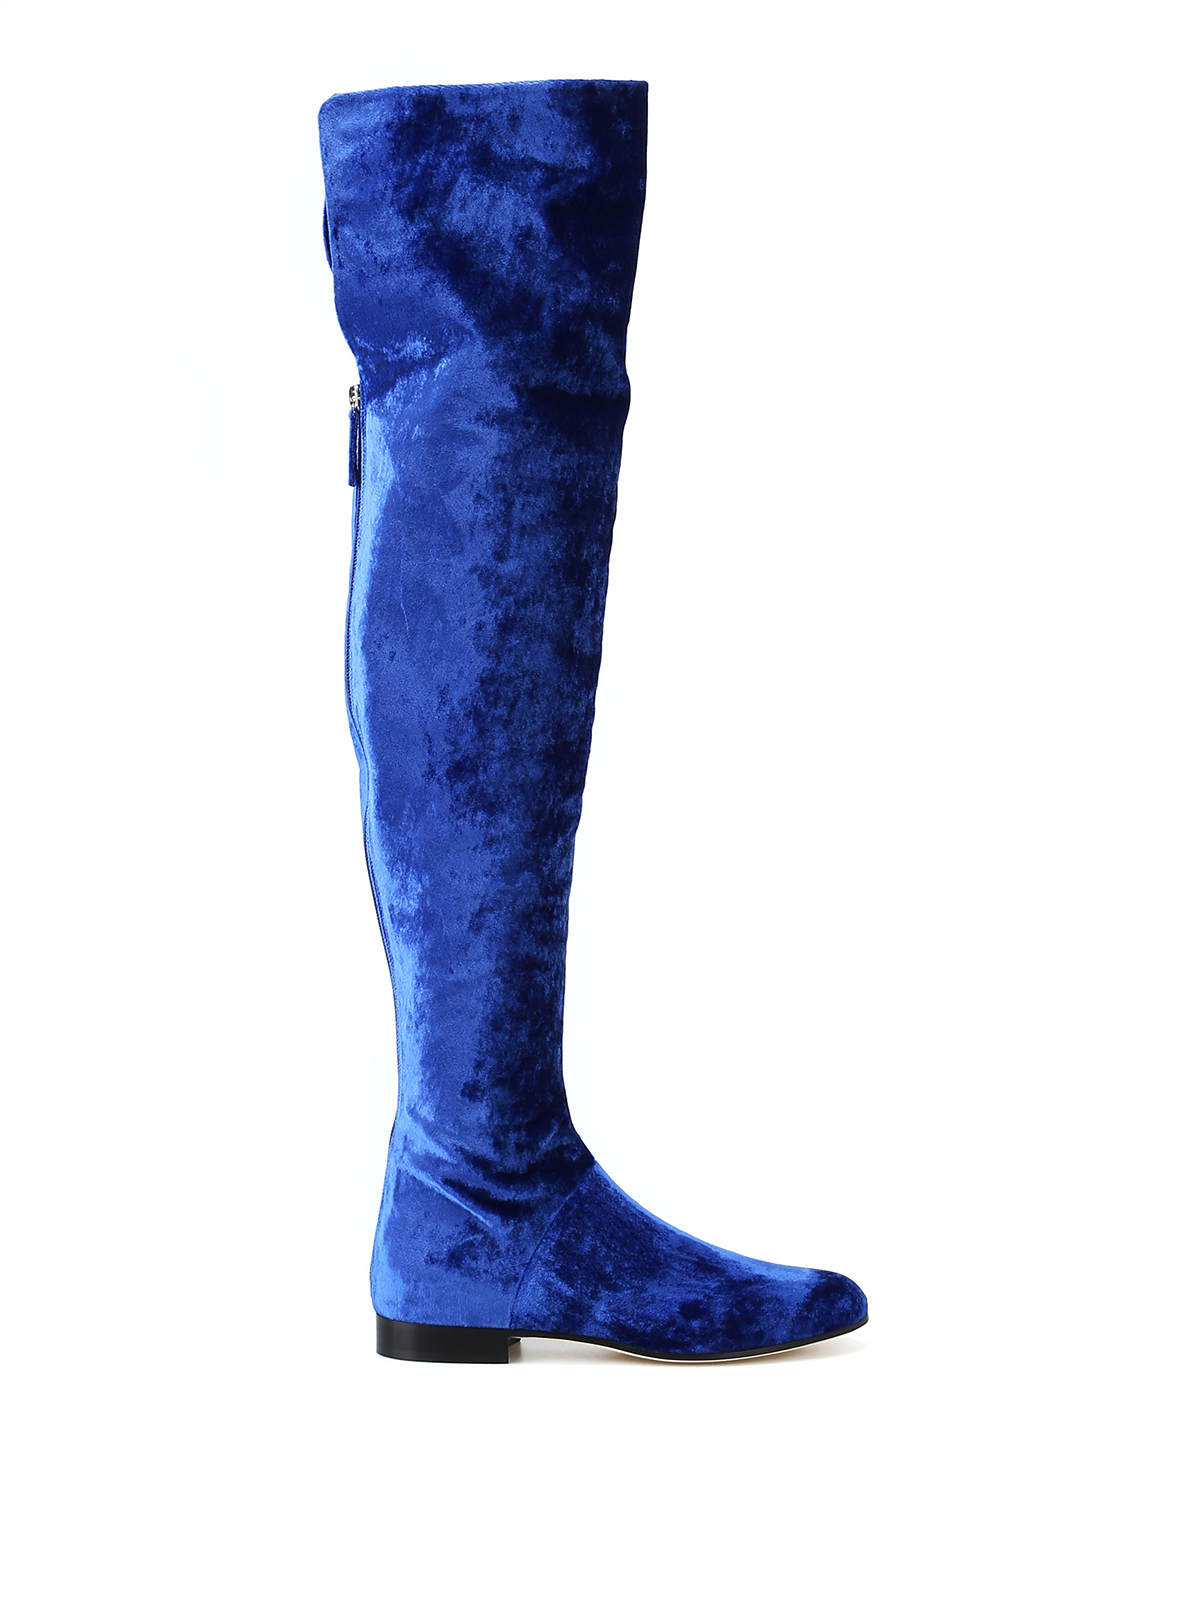 blue high knee boots